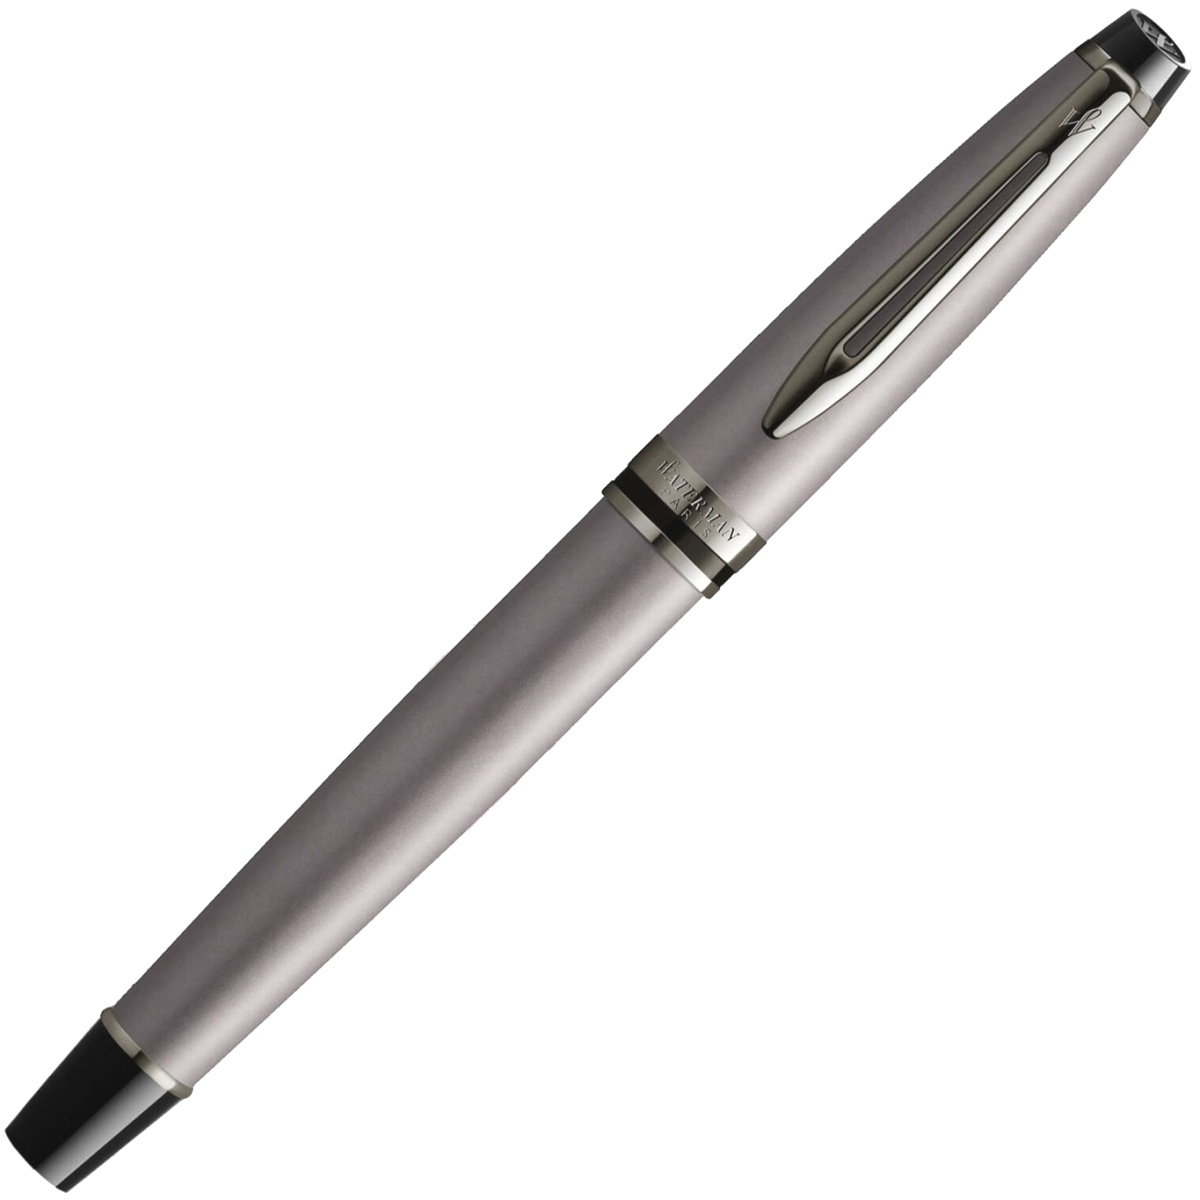  Ручка перьевая Waterman Expert DeLuxe, Metallic Silver RT (Перо F), фото 2